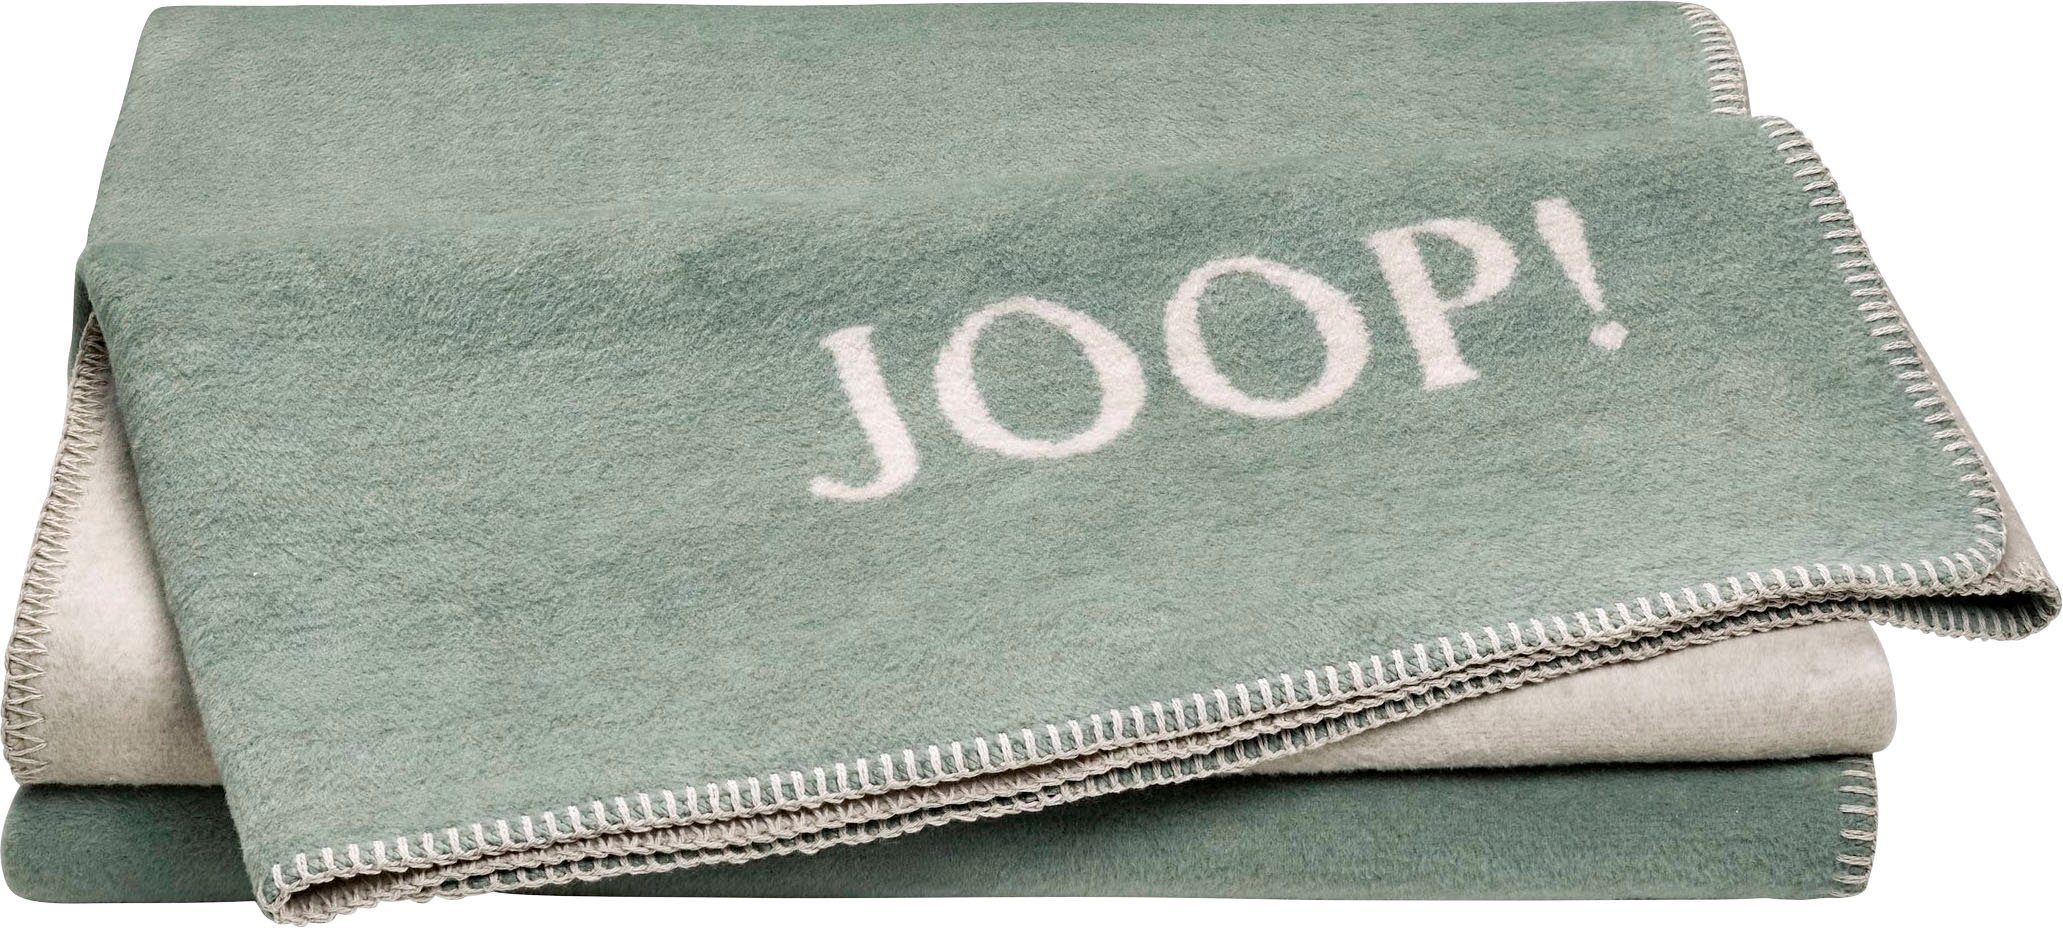 Wohndecke »JOOP! UNI-DOUBLEFACE«, Joop!, Weiche, großformatige Wohndecke im  eleganten Uni-Look mit JOOP! Logo, Wendefunktion und geketteltem Zierstich  online kaufen | OTTO